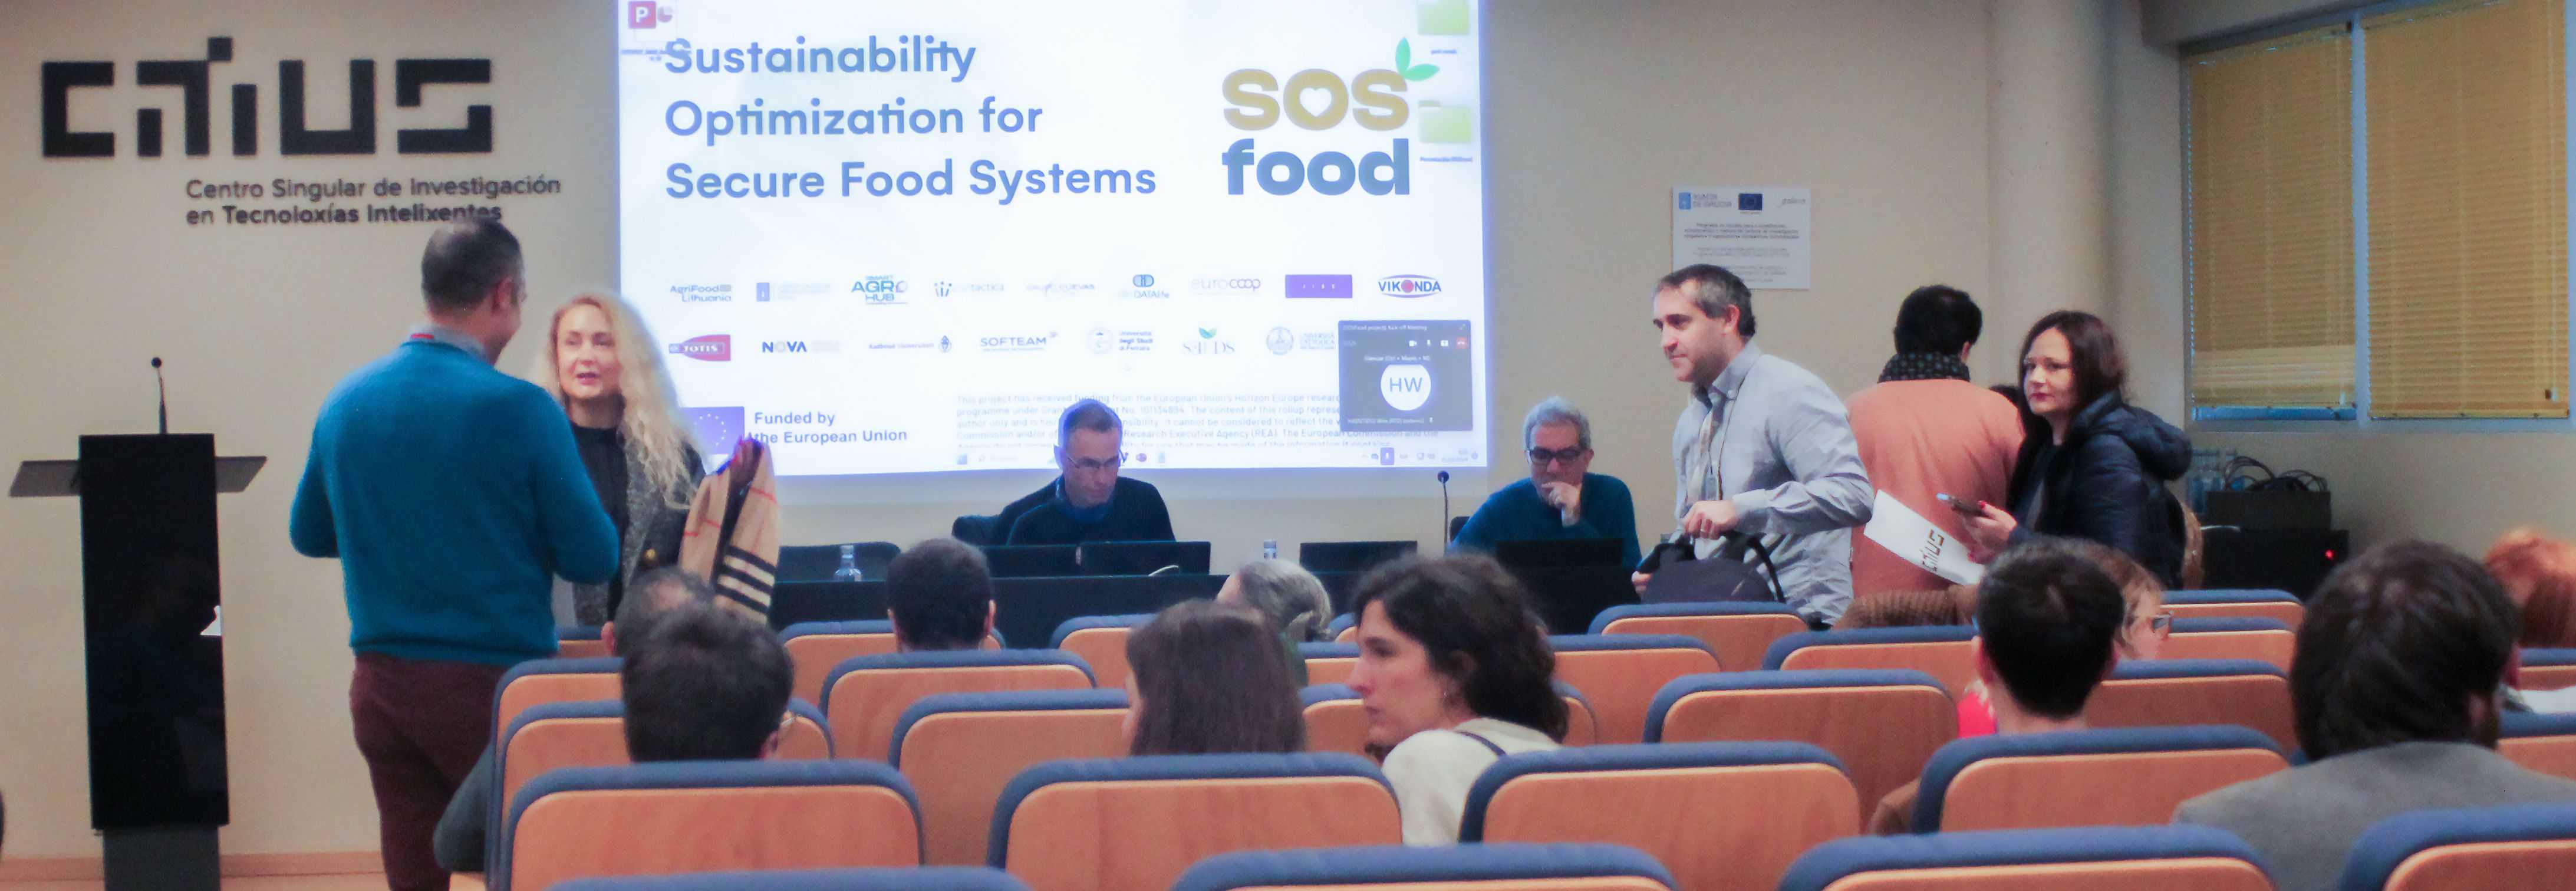 Nace SOSfood, un proxecto para optimizar a sustentabilidade do sistema alimentario baseado na importancia dos datos e o uso da Intelixencia artificial